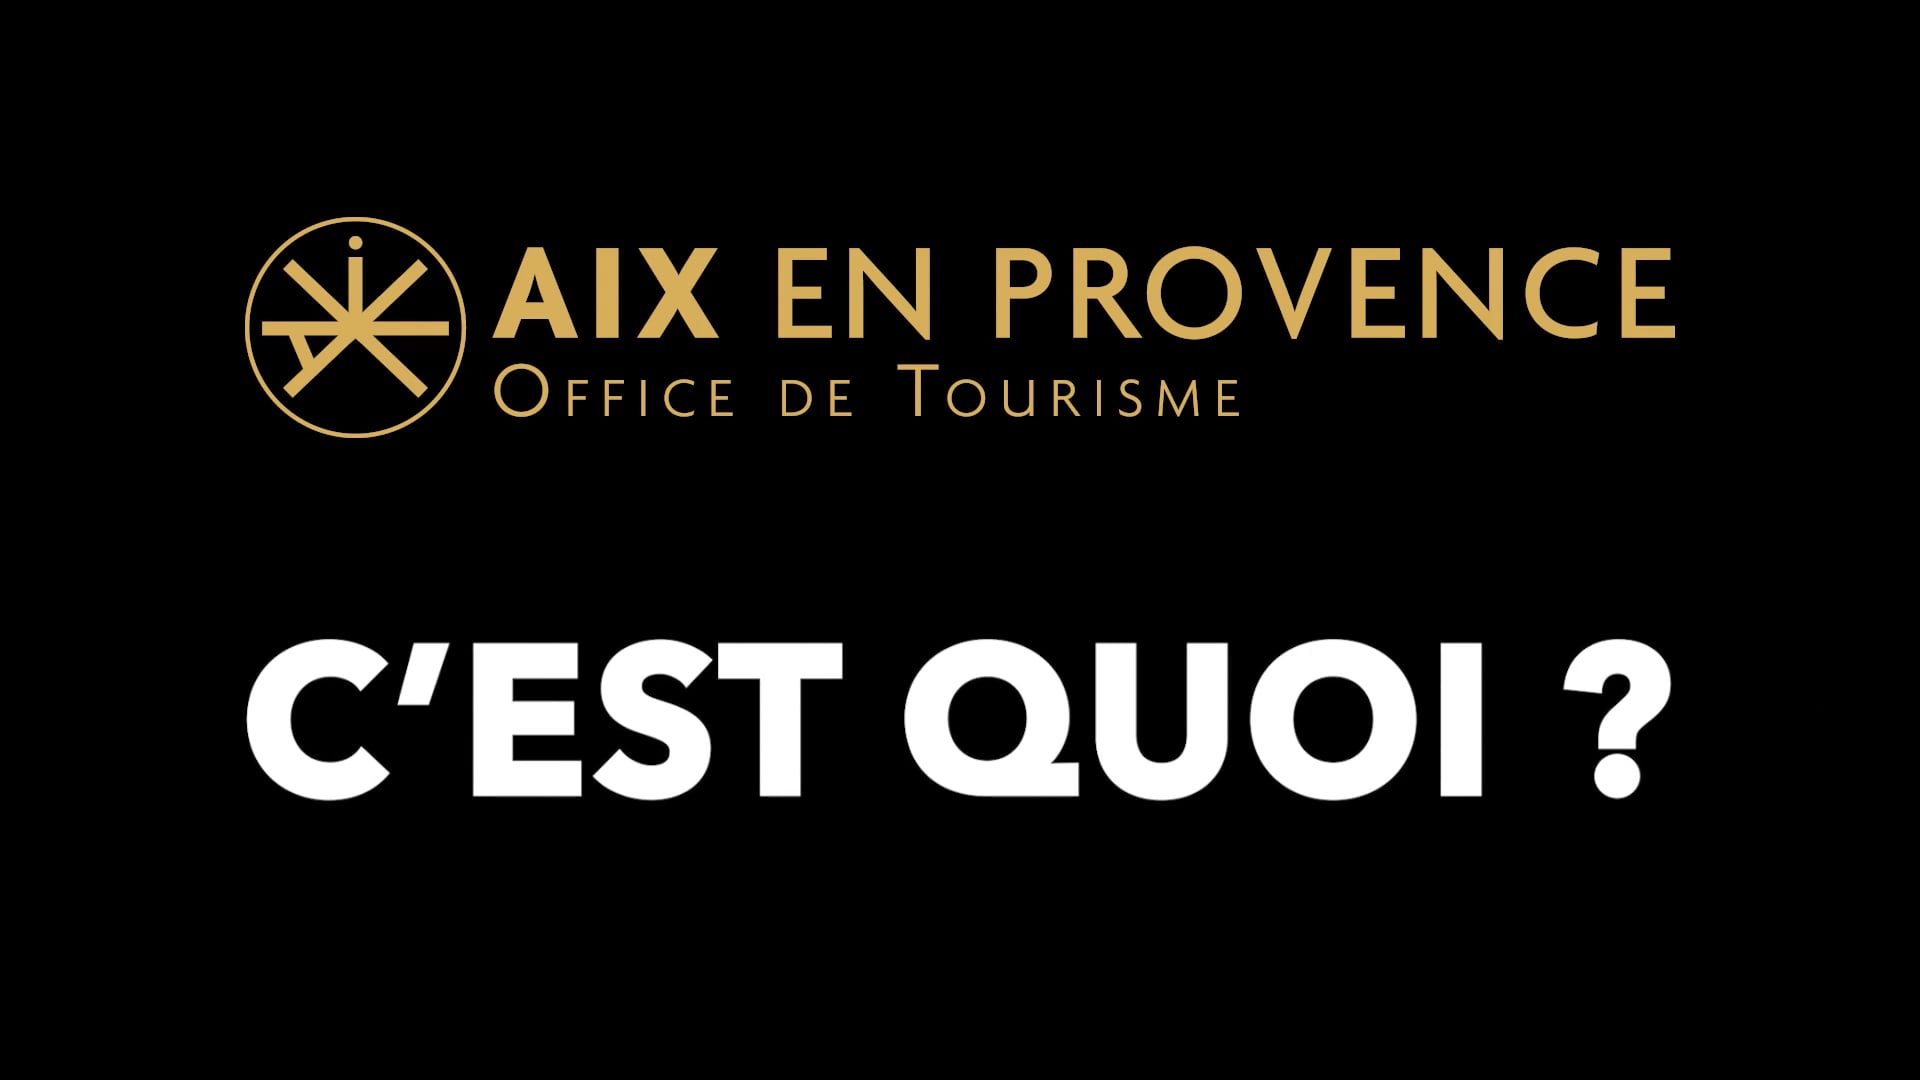 OFFICE DU TOURISME AIX EN PROVENCE on Vimeo